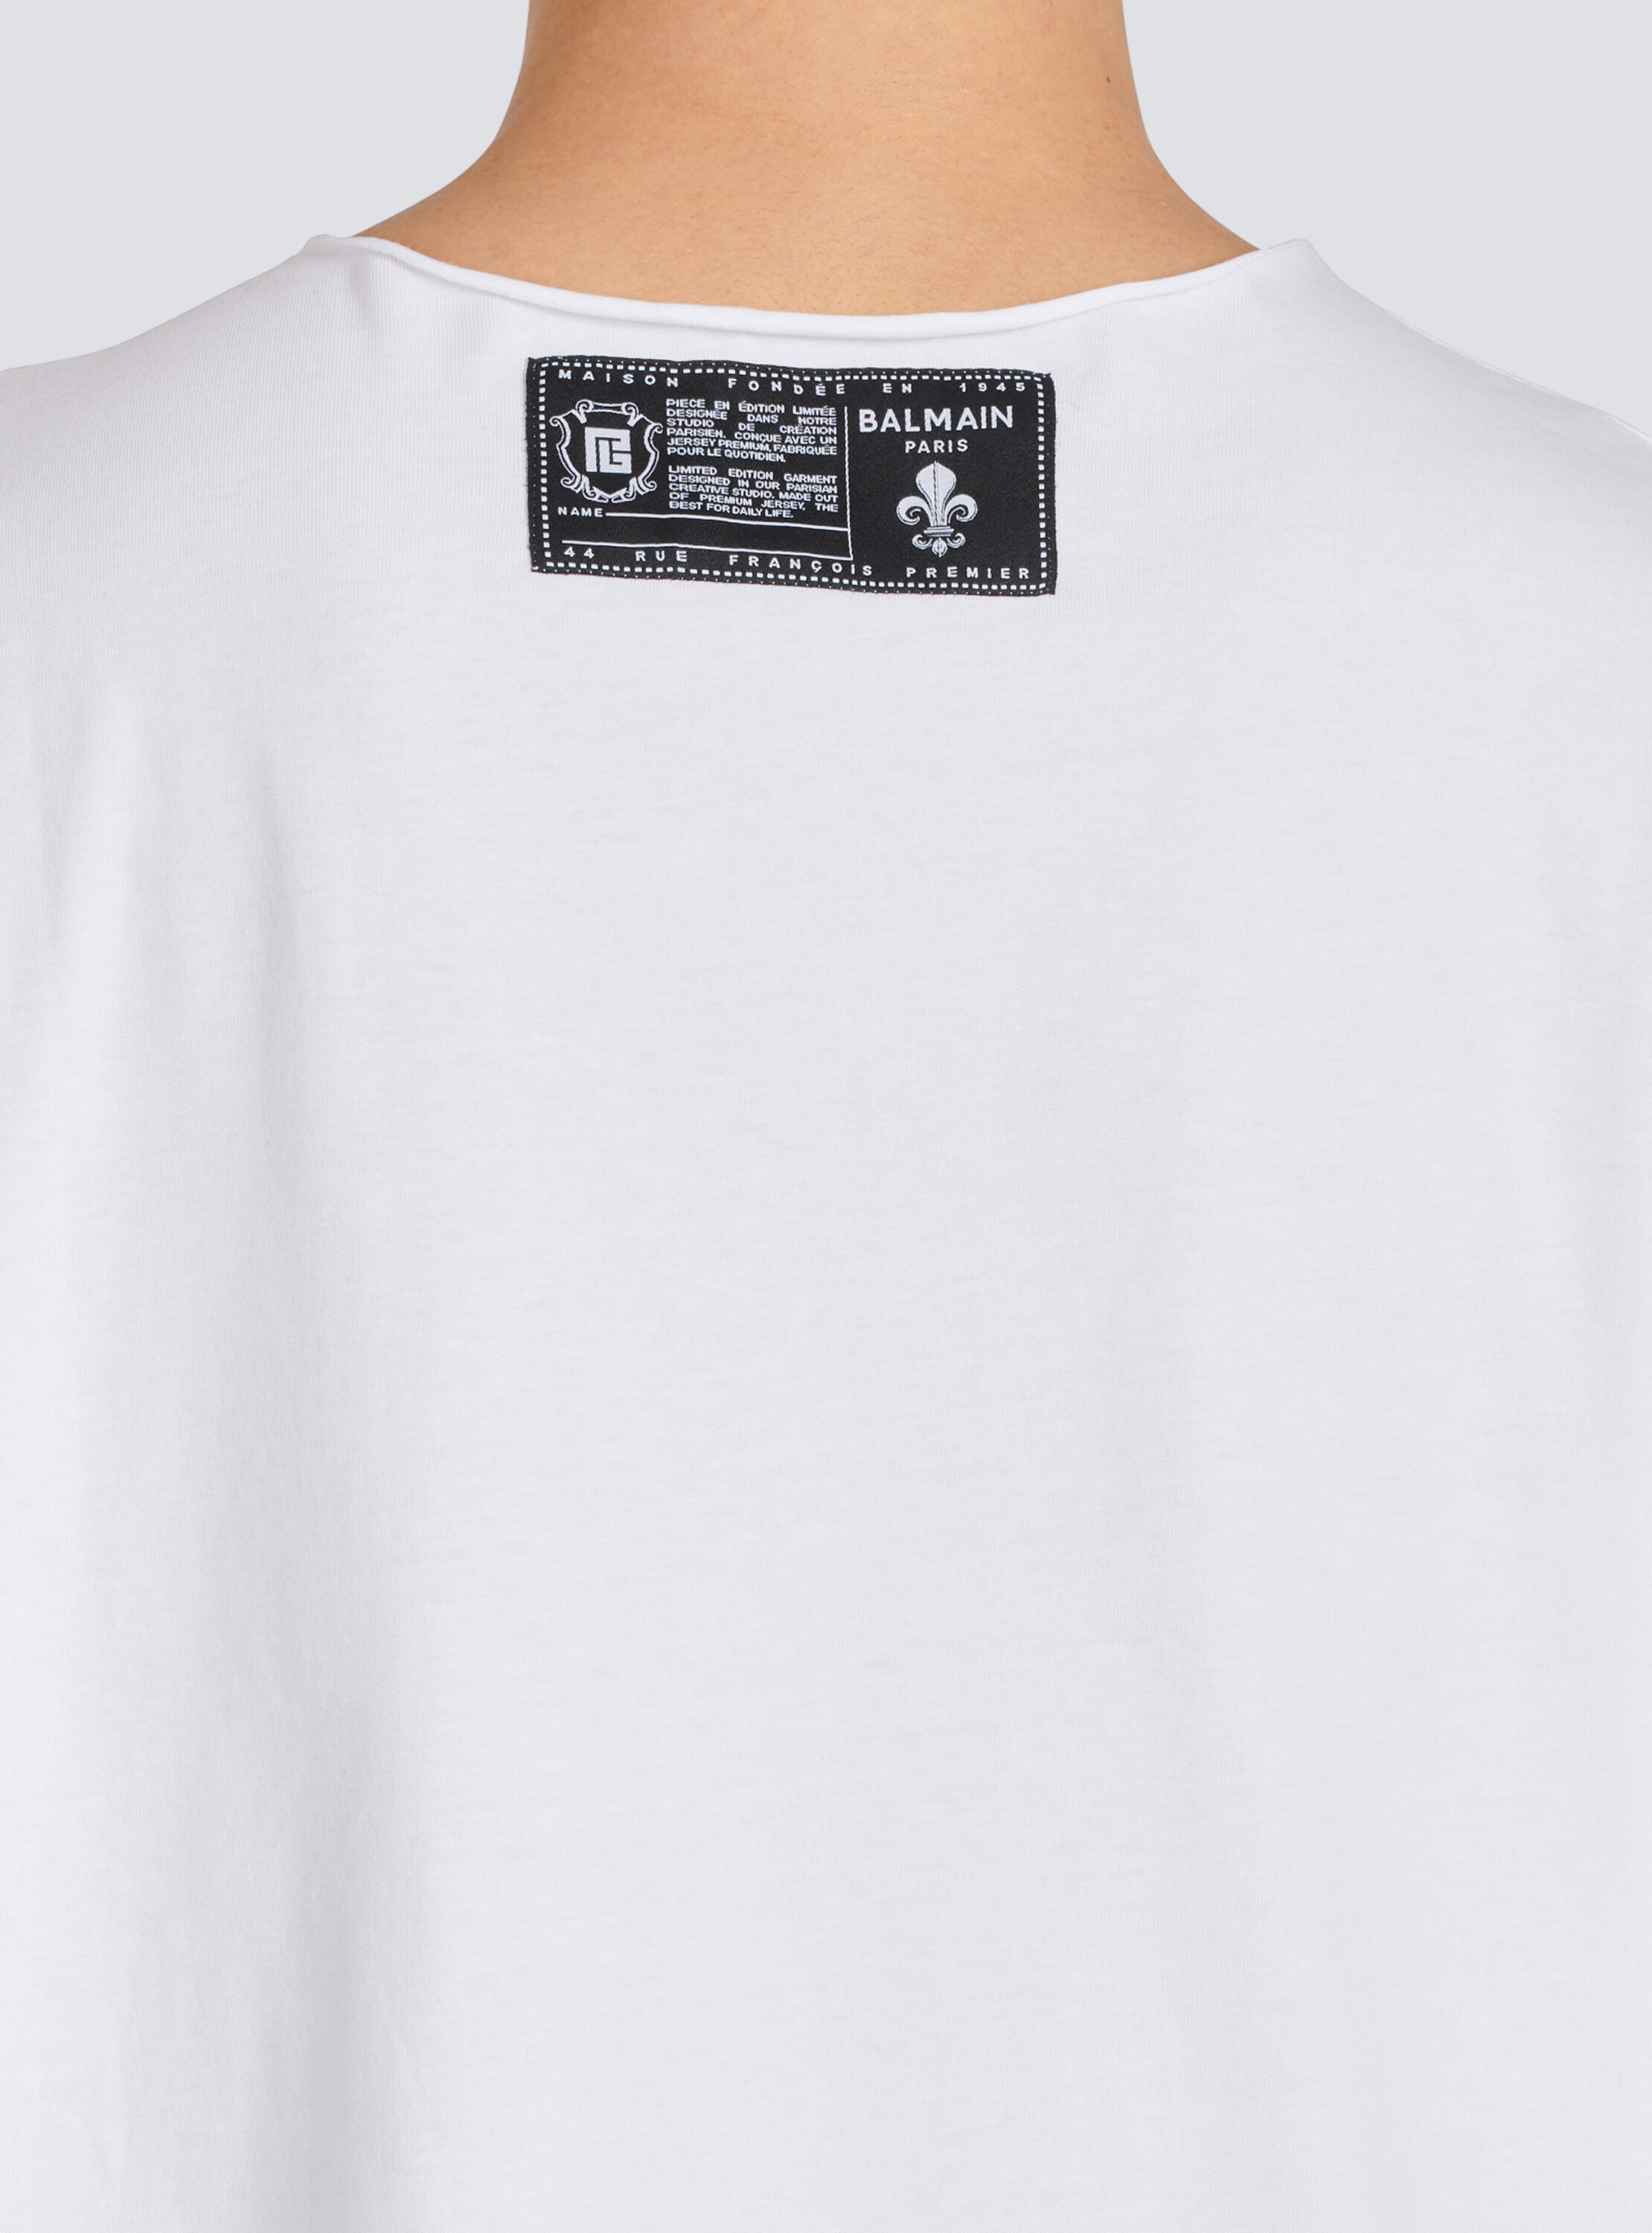 Ennoy Border Tシャツ L (BLACK × WHITE)エンノイ